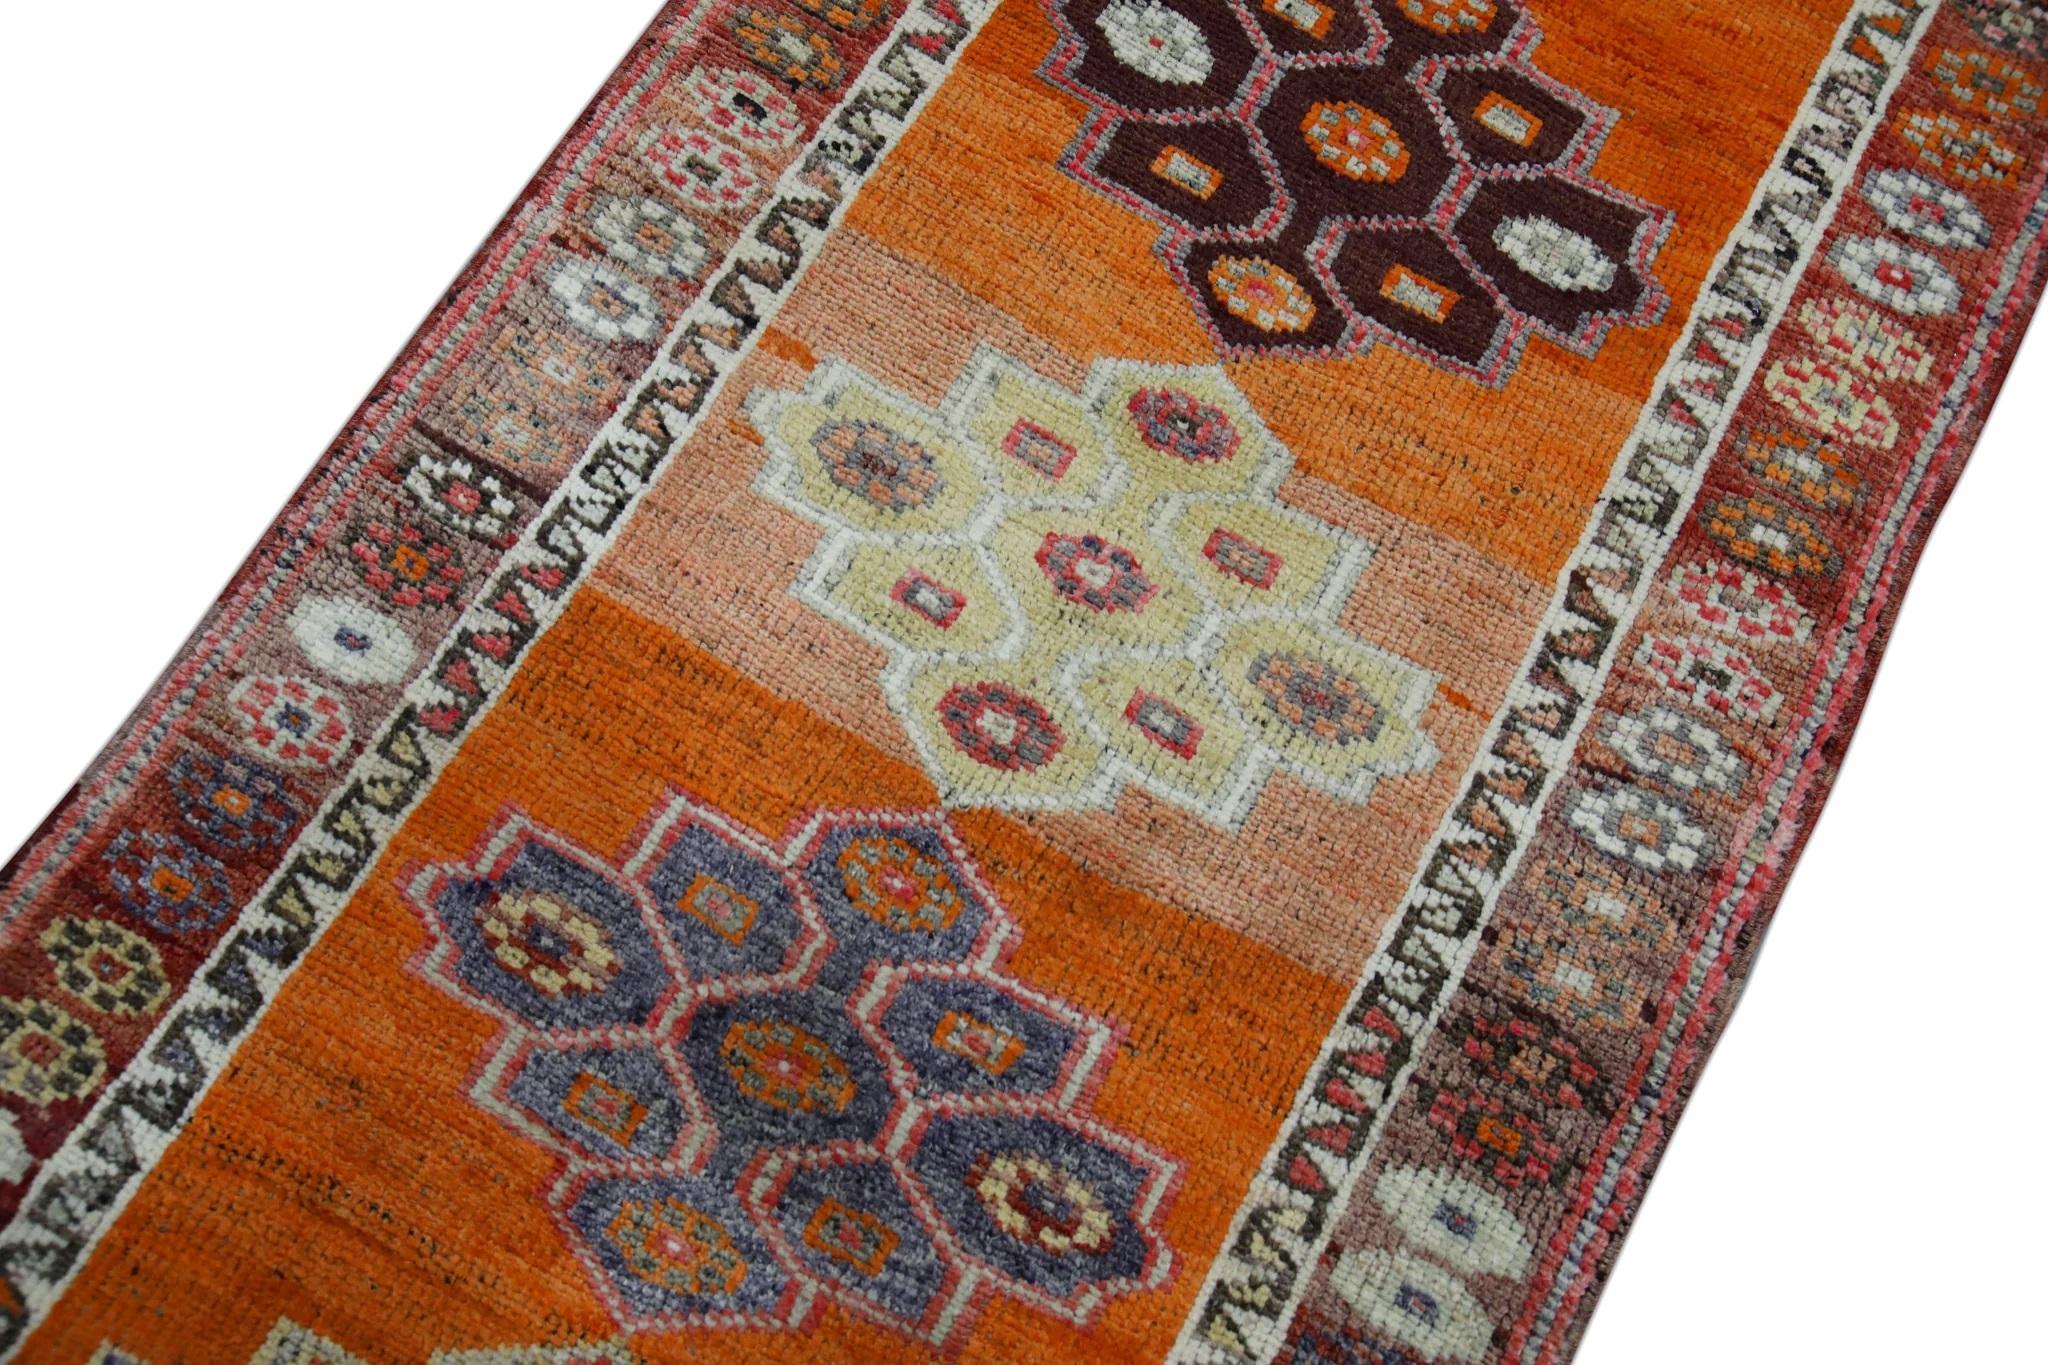 Vintage By est un tapis vintage en laine nouée à la main, fabriqué avec soin par des artisans qualifiés selon des techniques traditionnelles transmises de génération en génération. Ce tapis exquis s'enorgueillit d'une étonnante gamme de teintures